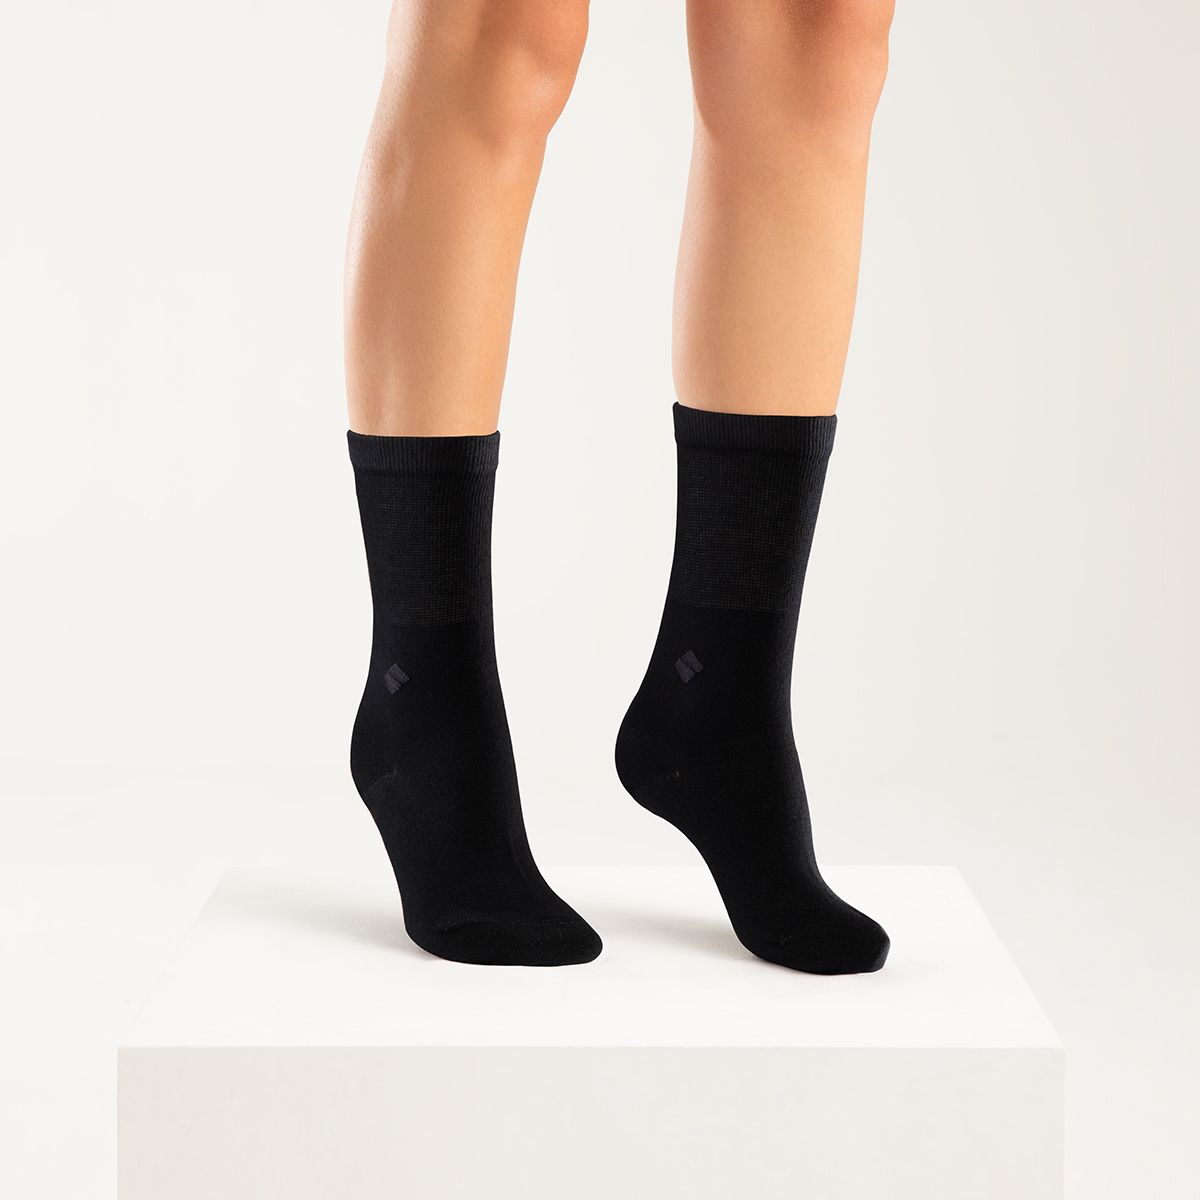 bonnysilver diabetic silver socks worn by female model